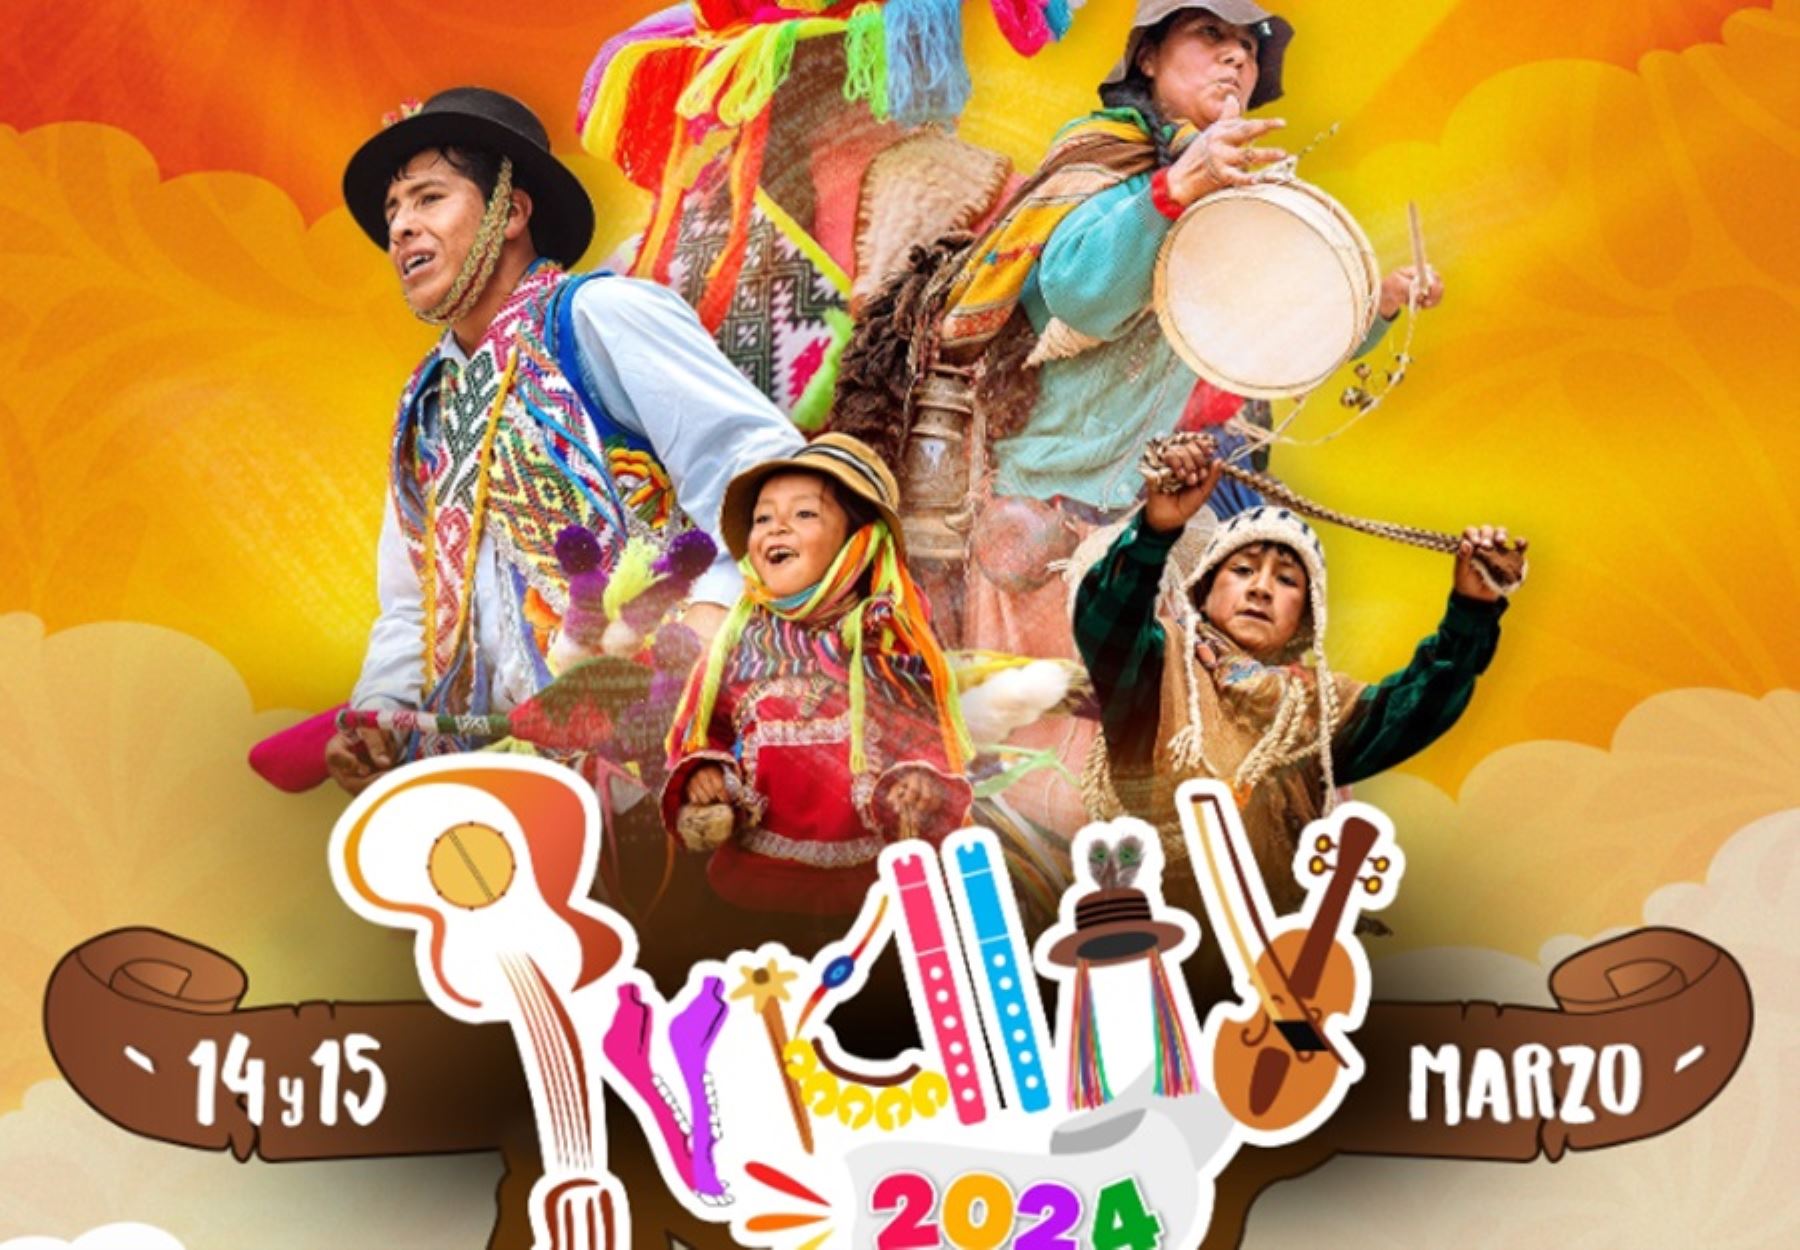 La ciudad de Andahuaylas se apresta a celebrar, el próximo 14 y 15 de marzo, la XVIII edición del Pukllay, el eufórico y genuino “Carnaval originario del Perú”.